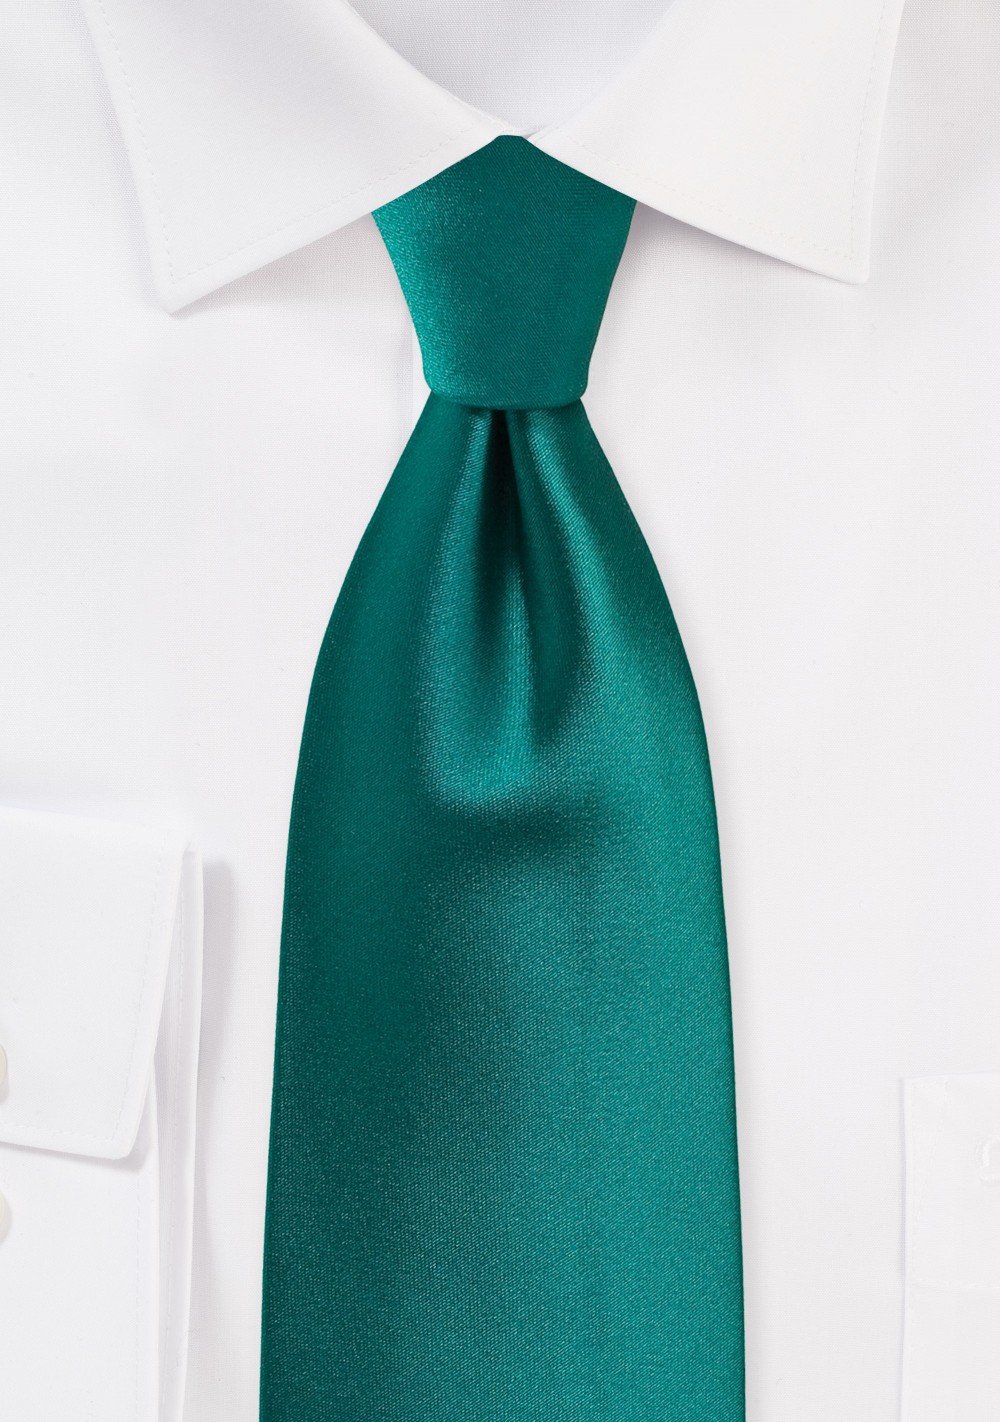 XL Necktie Everglade Green